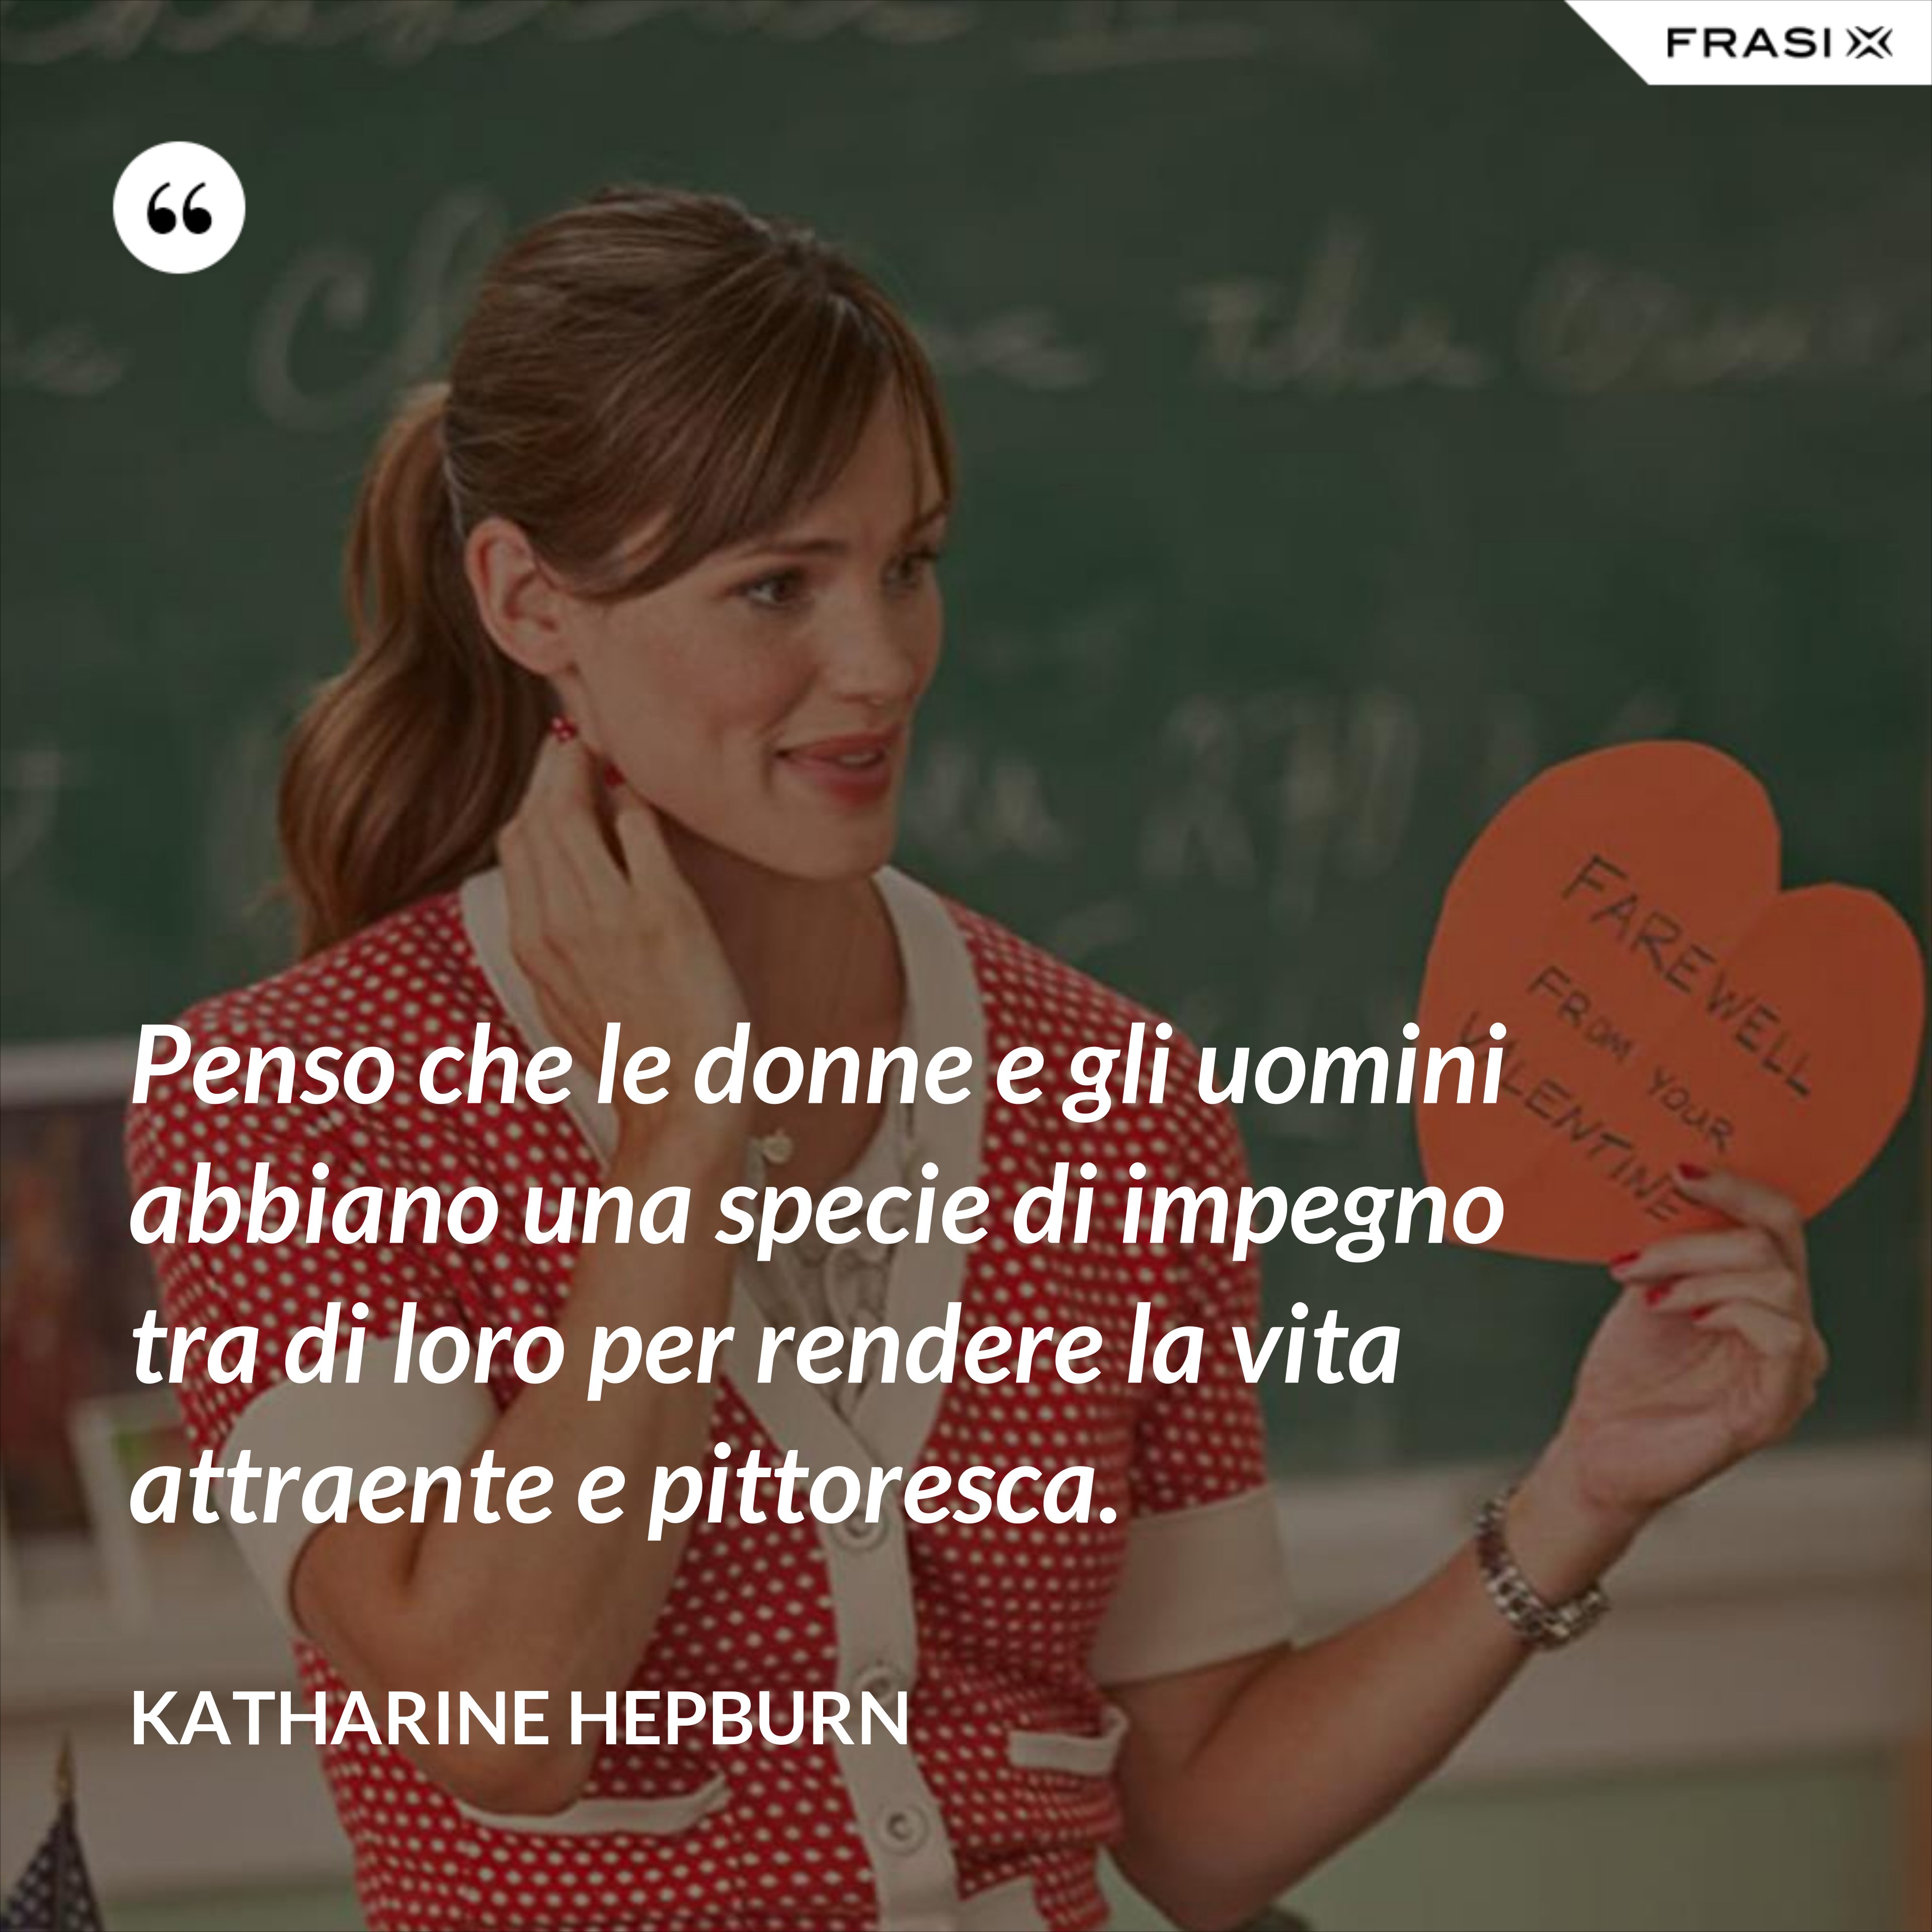 Penso che le donne e gli uomini abbiano una specie di impegno tra di loro per rendere la vita attraente e pittoresca. - Katharine Hepburn